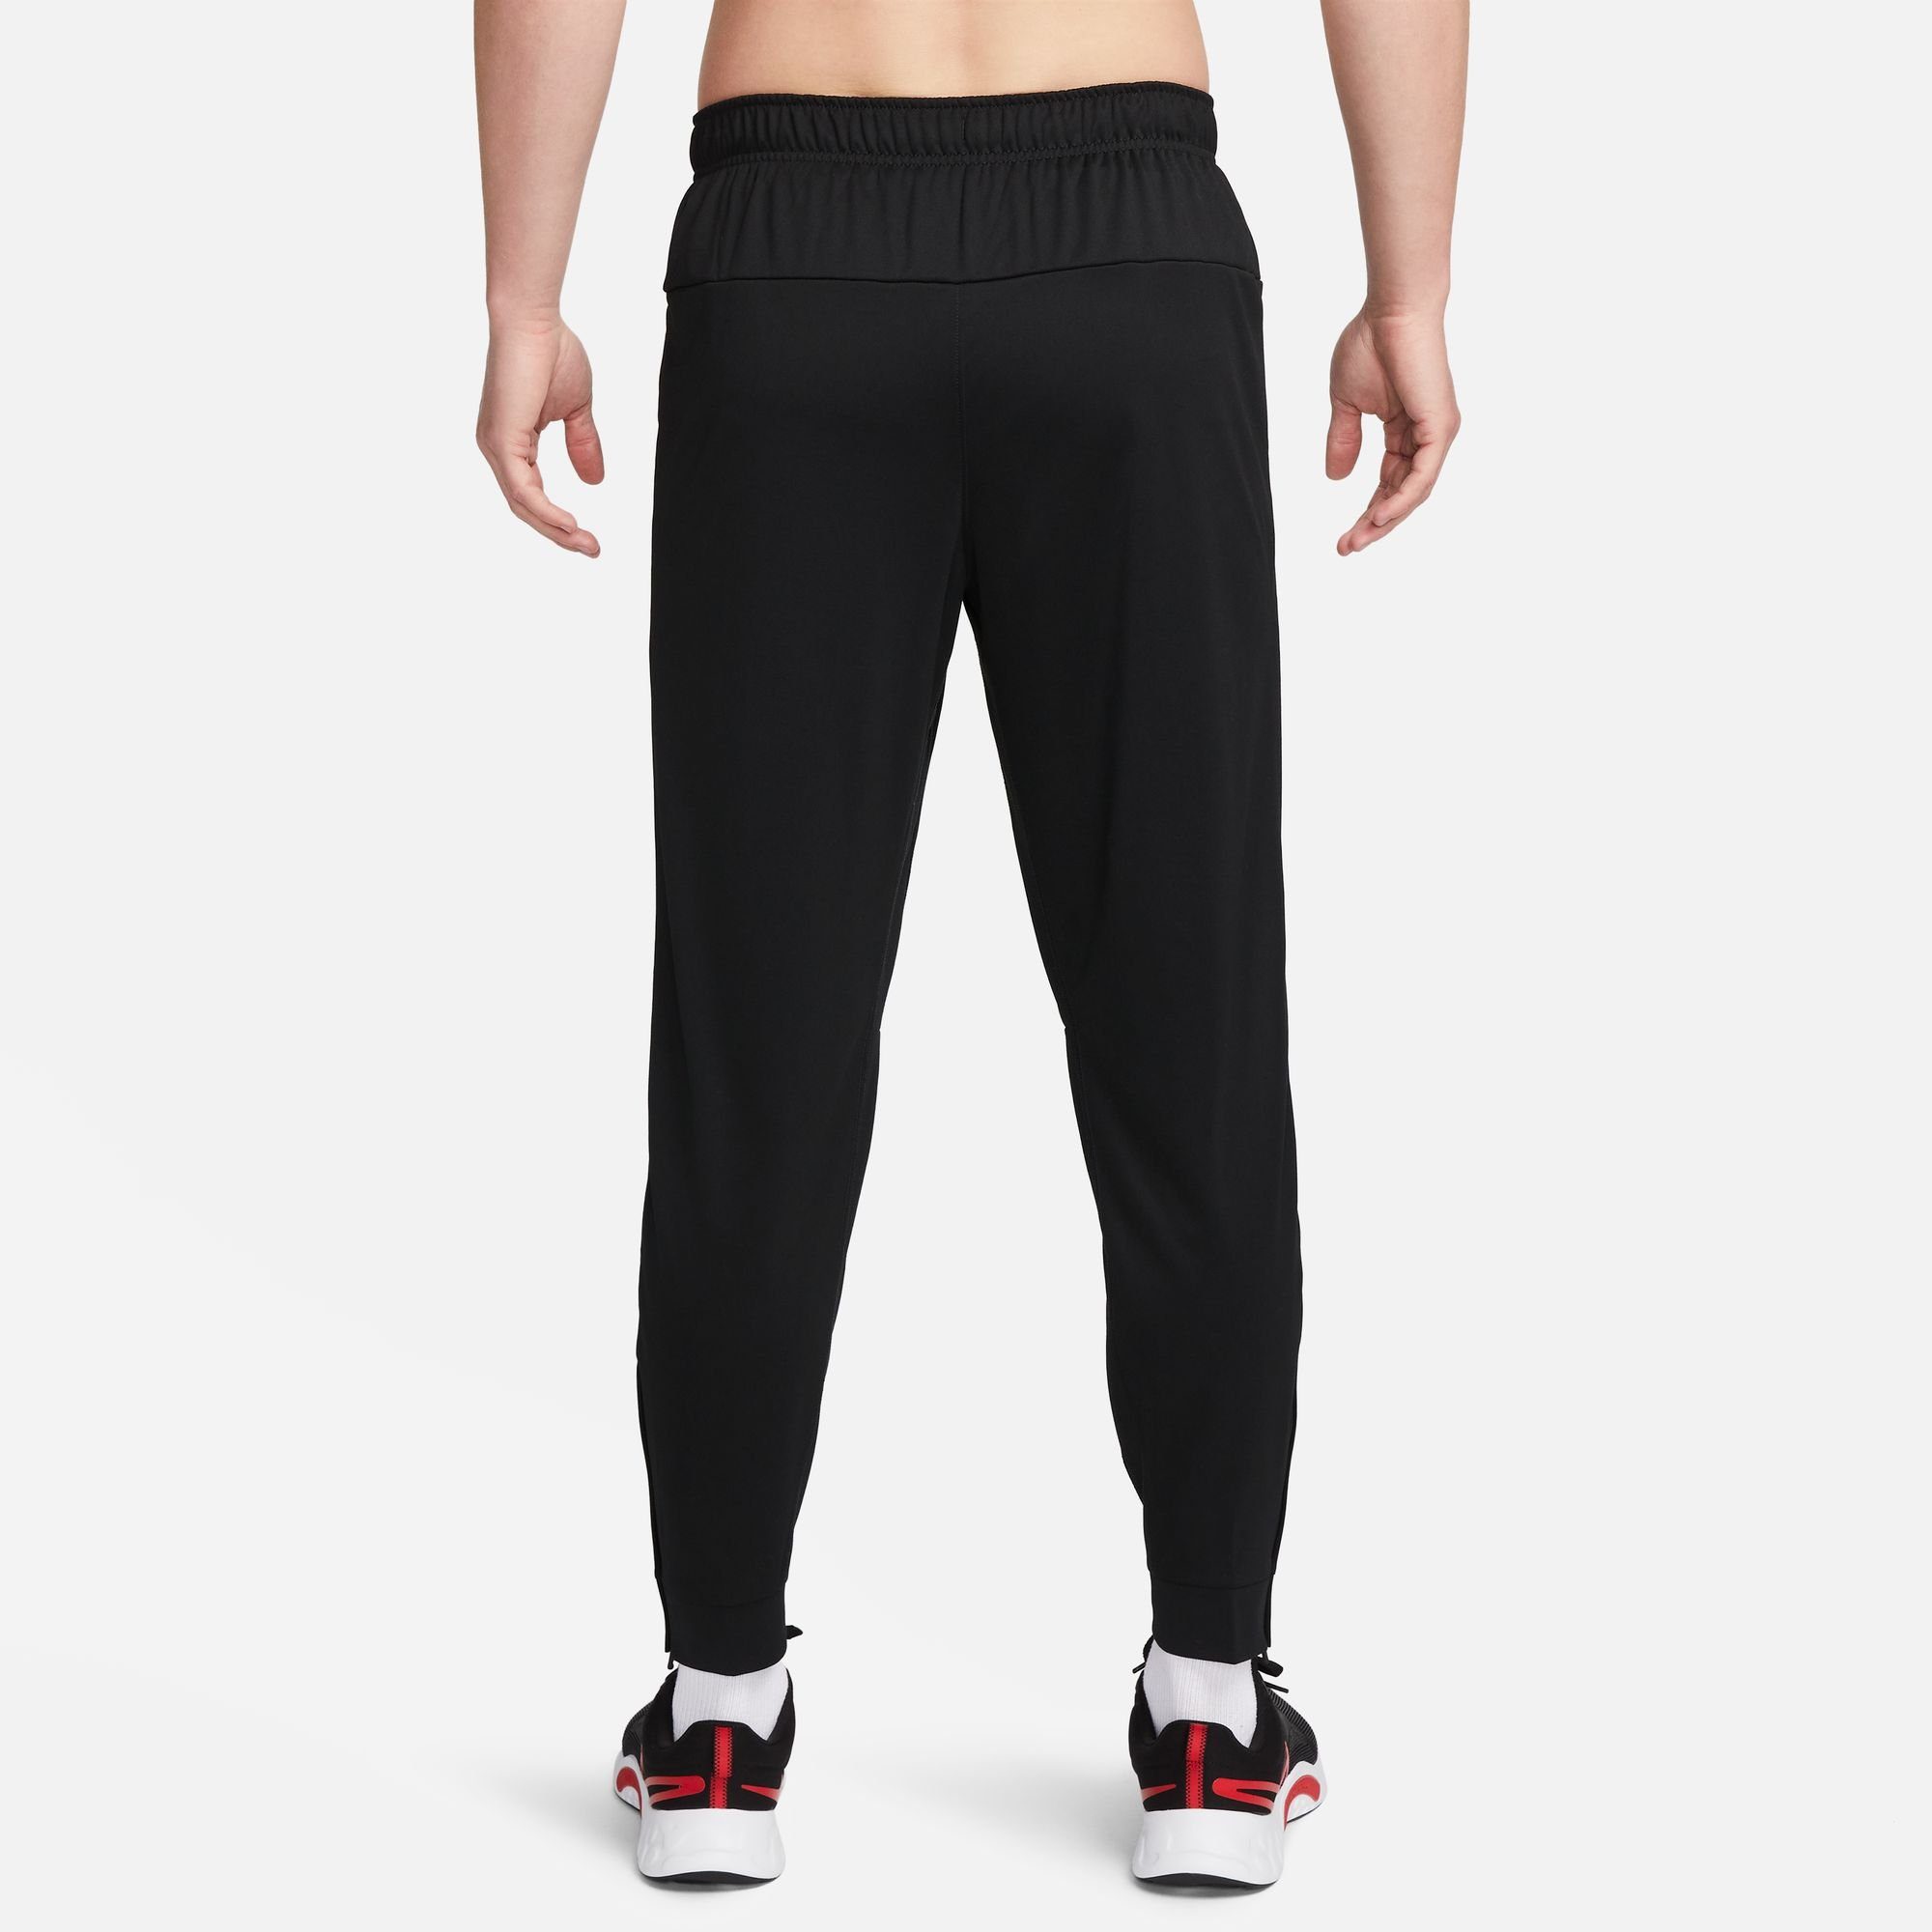 Nike PANTS BLACK/WHITE TAPERED TOTALITY MEN'S Trainingshose FITNESS DRI-FIT